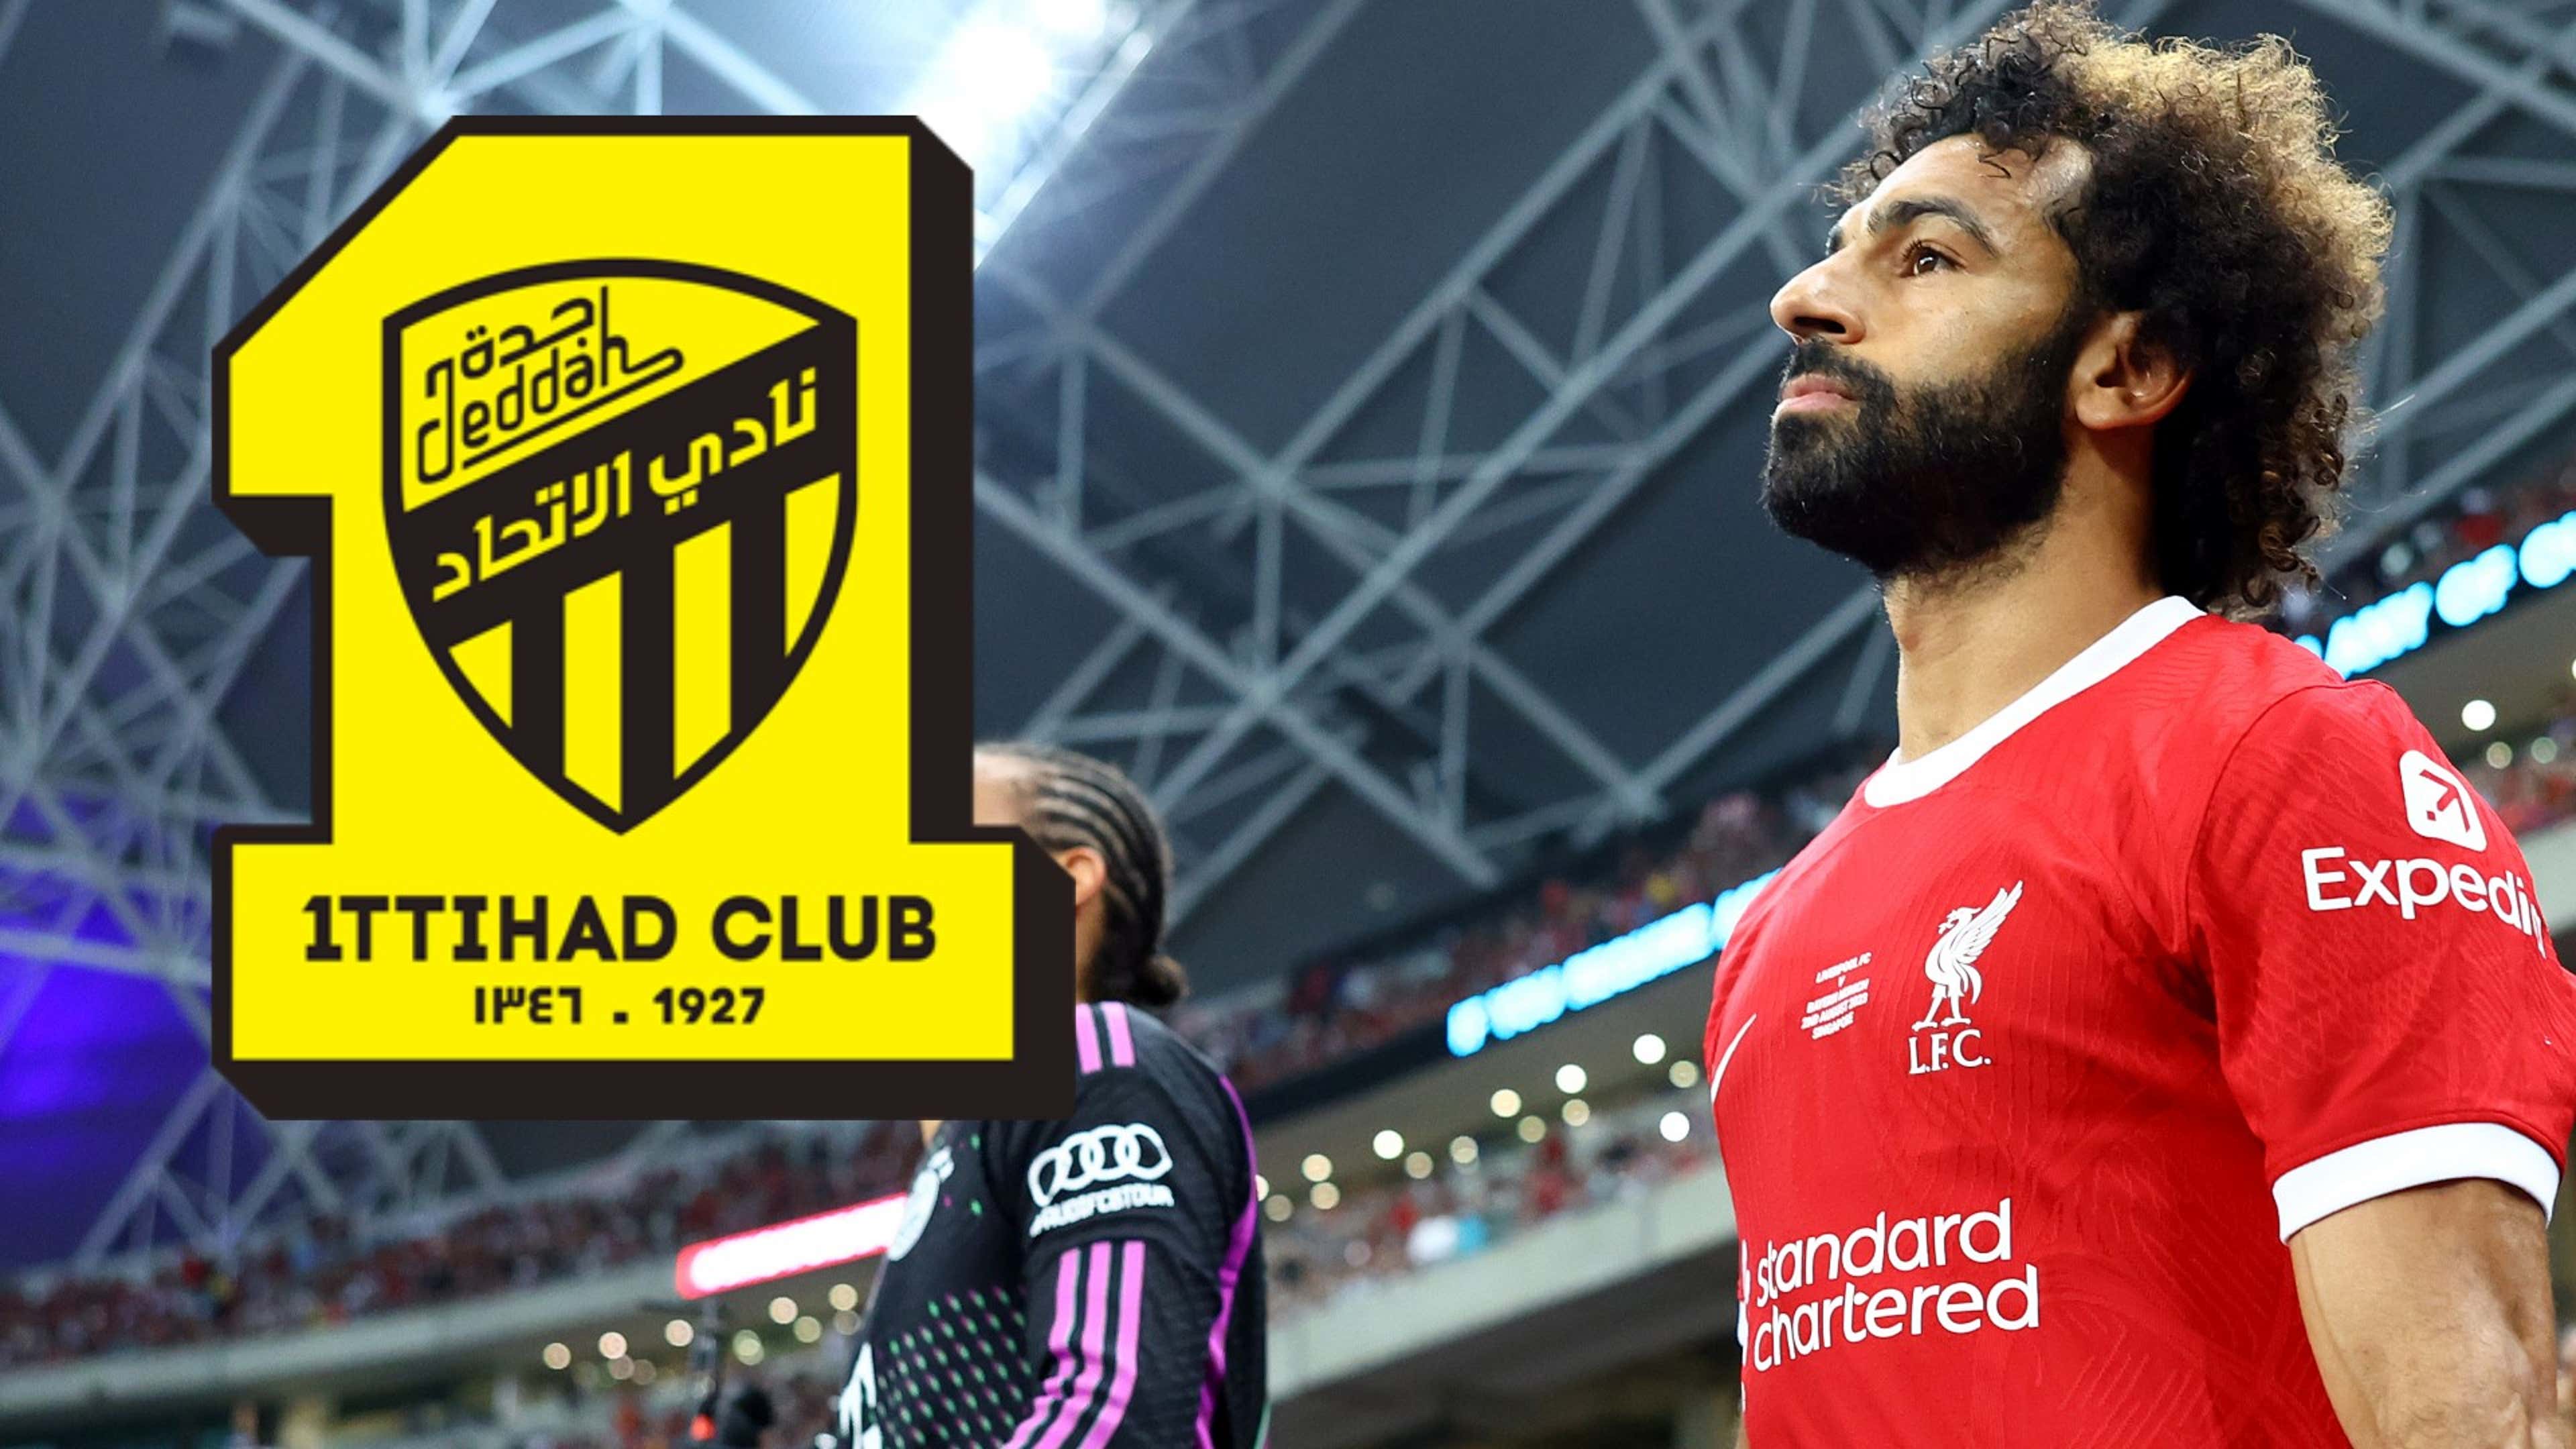 Tin chuyển nhượng trưa 6/9: MU có tân binh đầu tiên của mùa đông; Salah trên đường rời Liverpool?